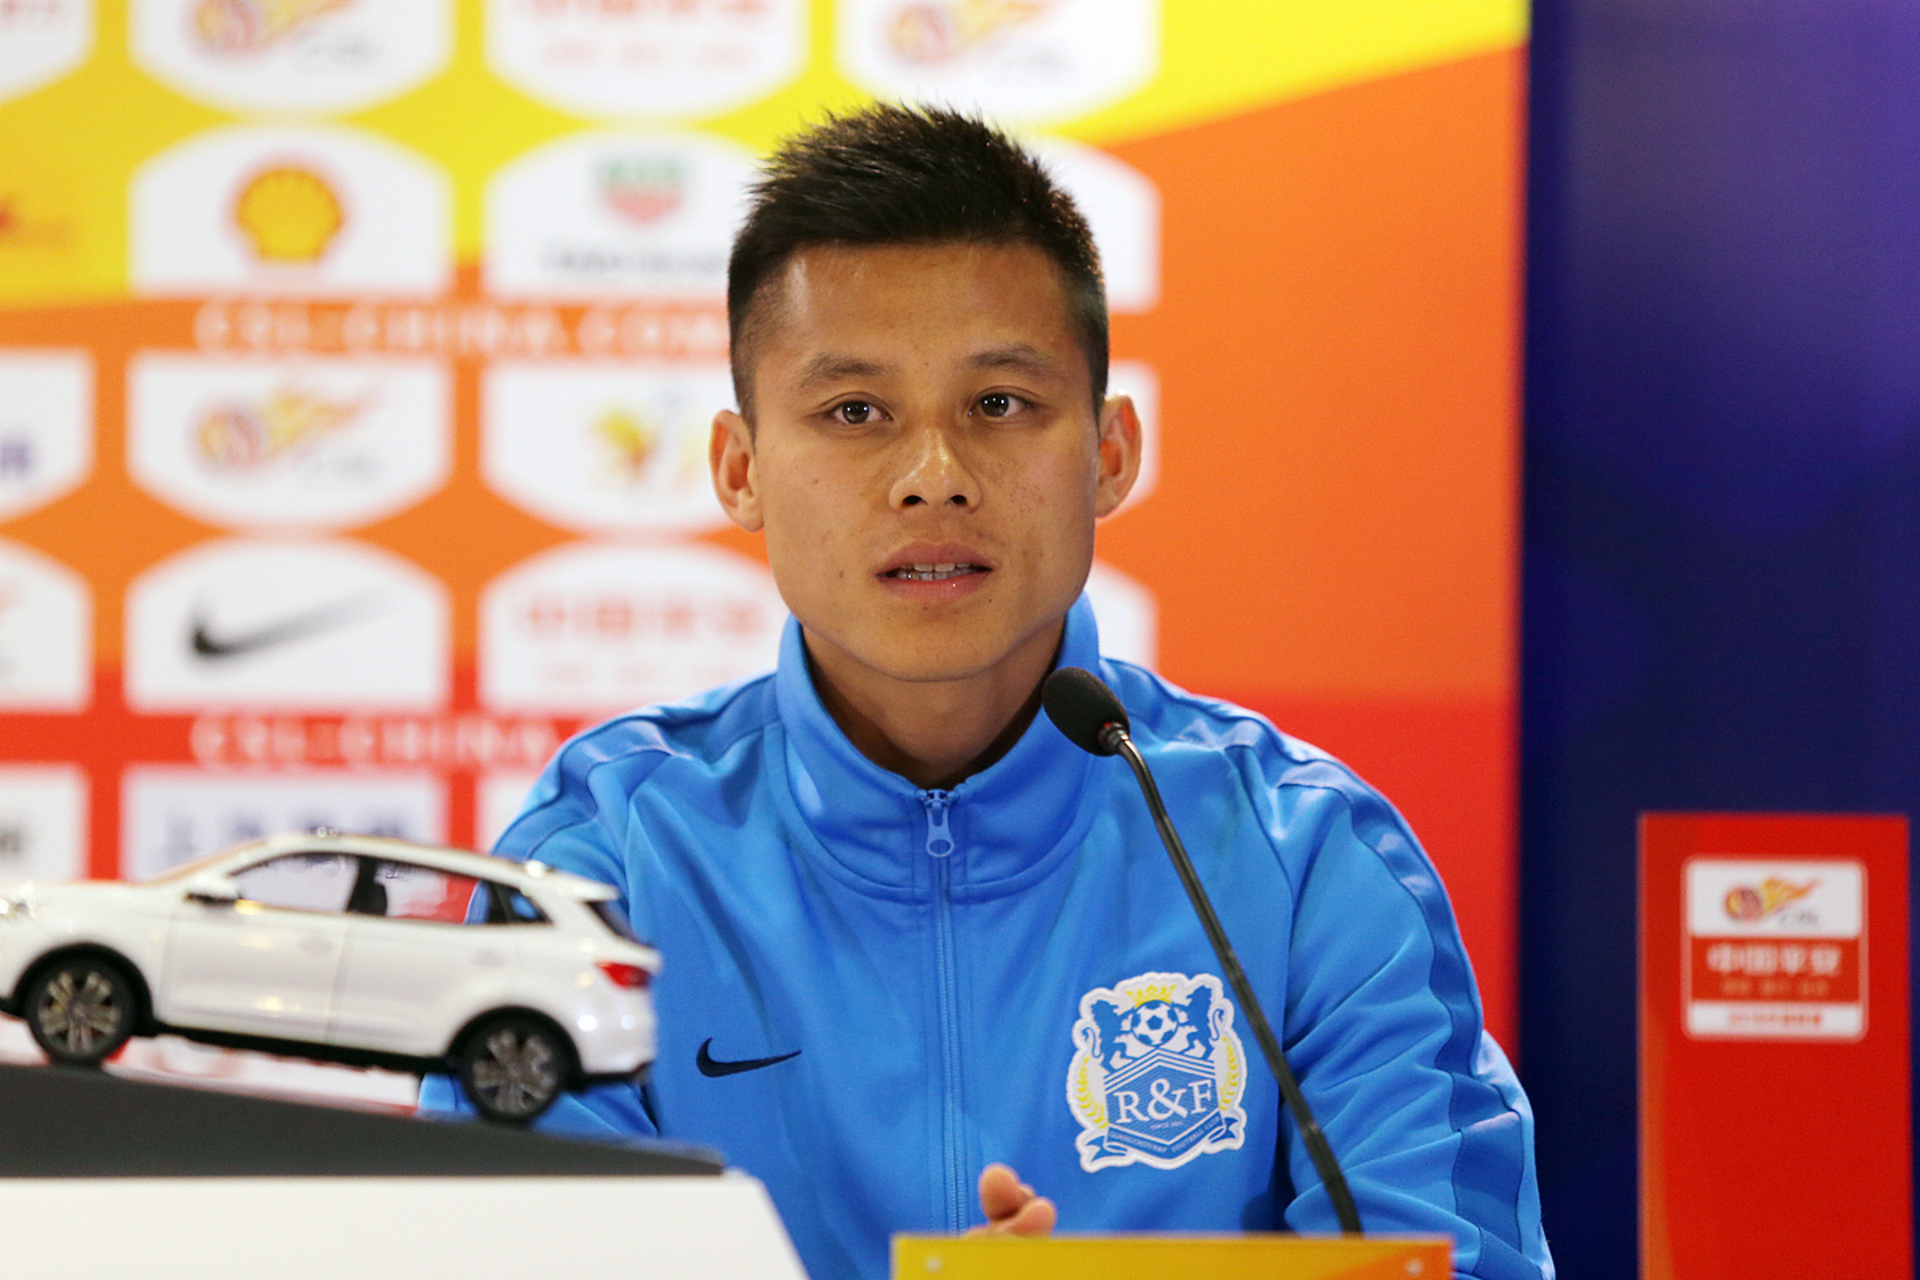 34岁的广州城球员陈志钊宣布退役,曾入选过卡马乔和里皮的国家队